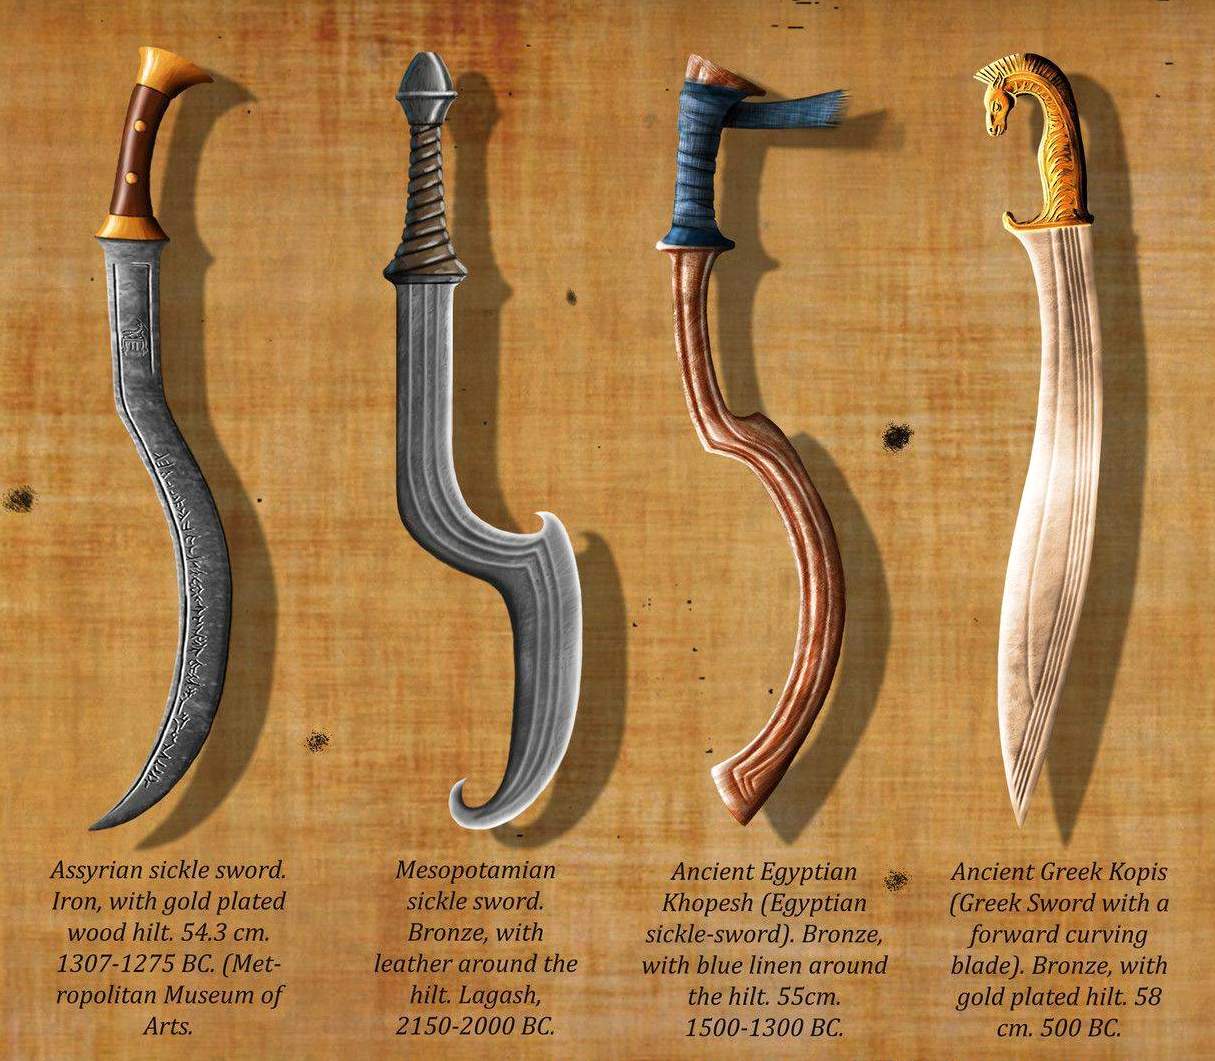 خوپیش تلوار: وہ مشہور ہتھیار جس نے قدیم مصر کی تاریخ کو جعل سازی کی۔